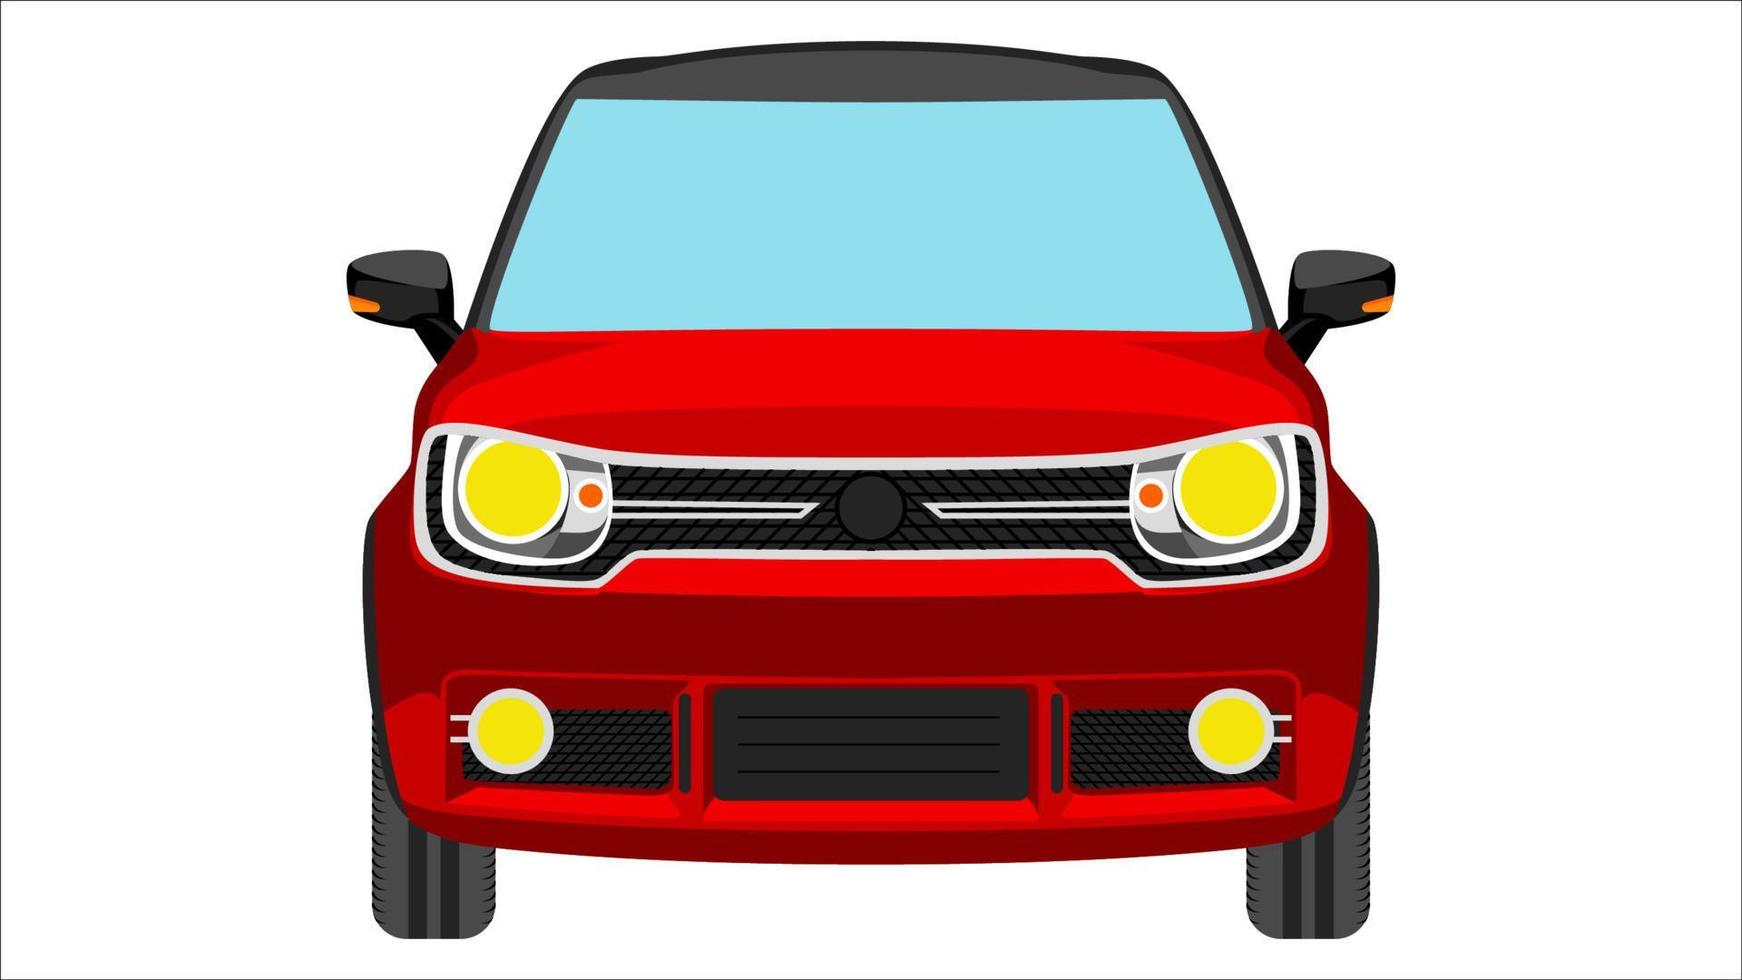 carro hatchback premium em vetor de cor brilhante, ilustração em vetor de cor plana de carro realista